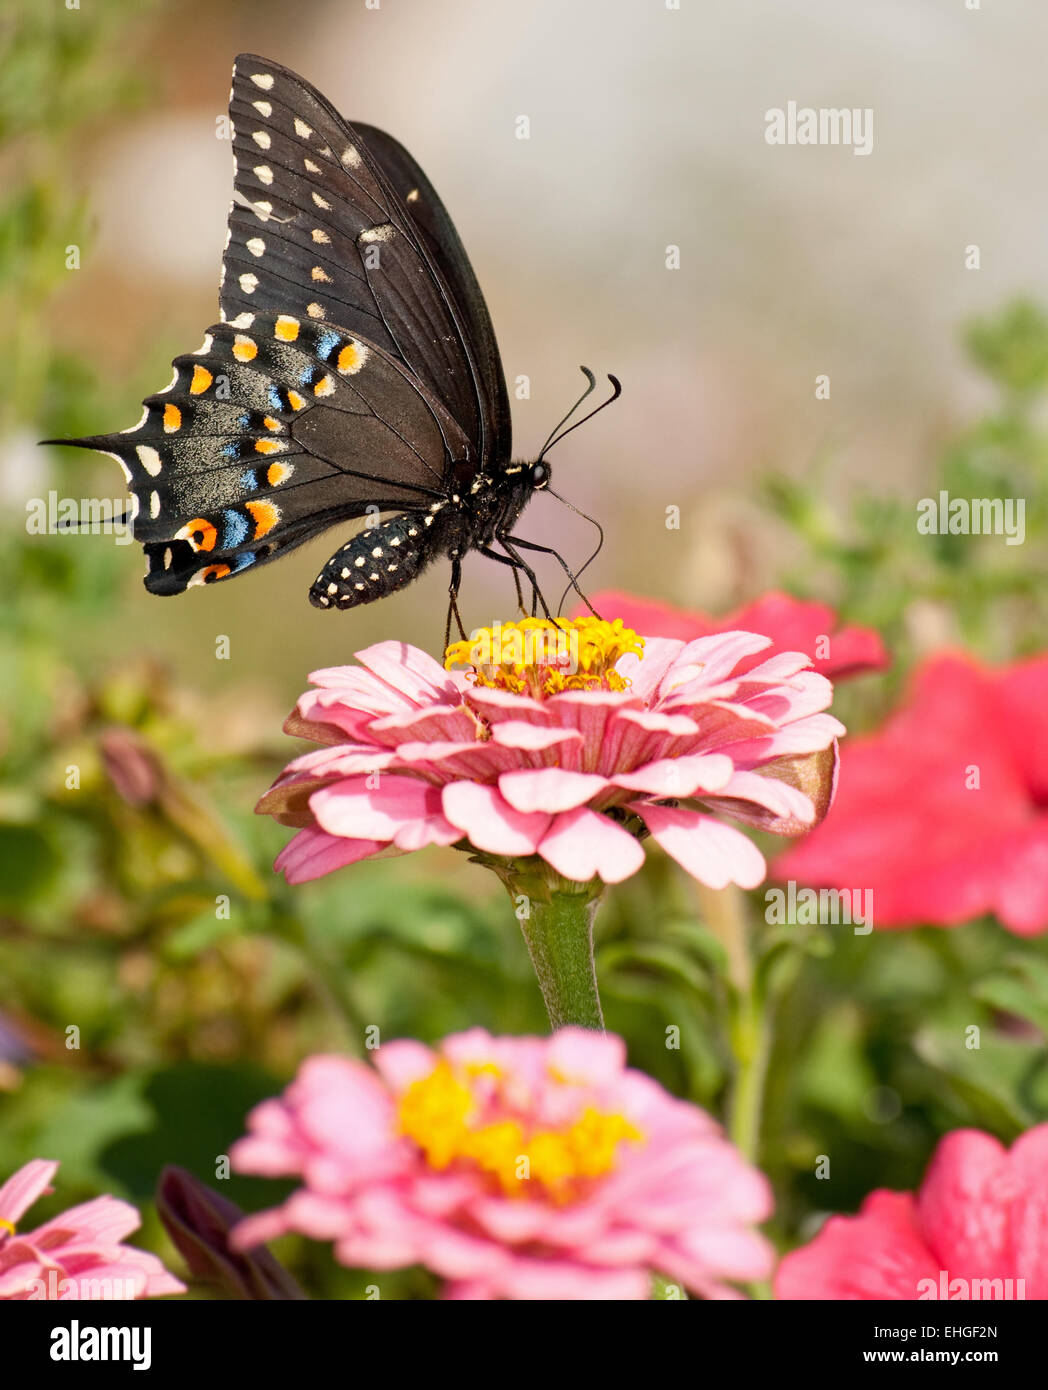 Beautiful Eastern Black Swallowtail butterfly in garden Stock Photo